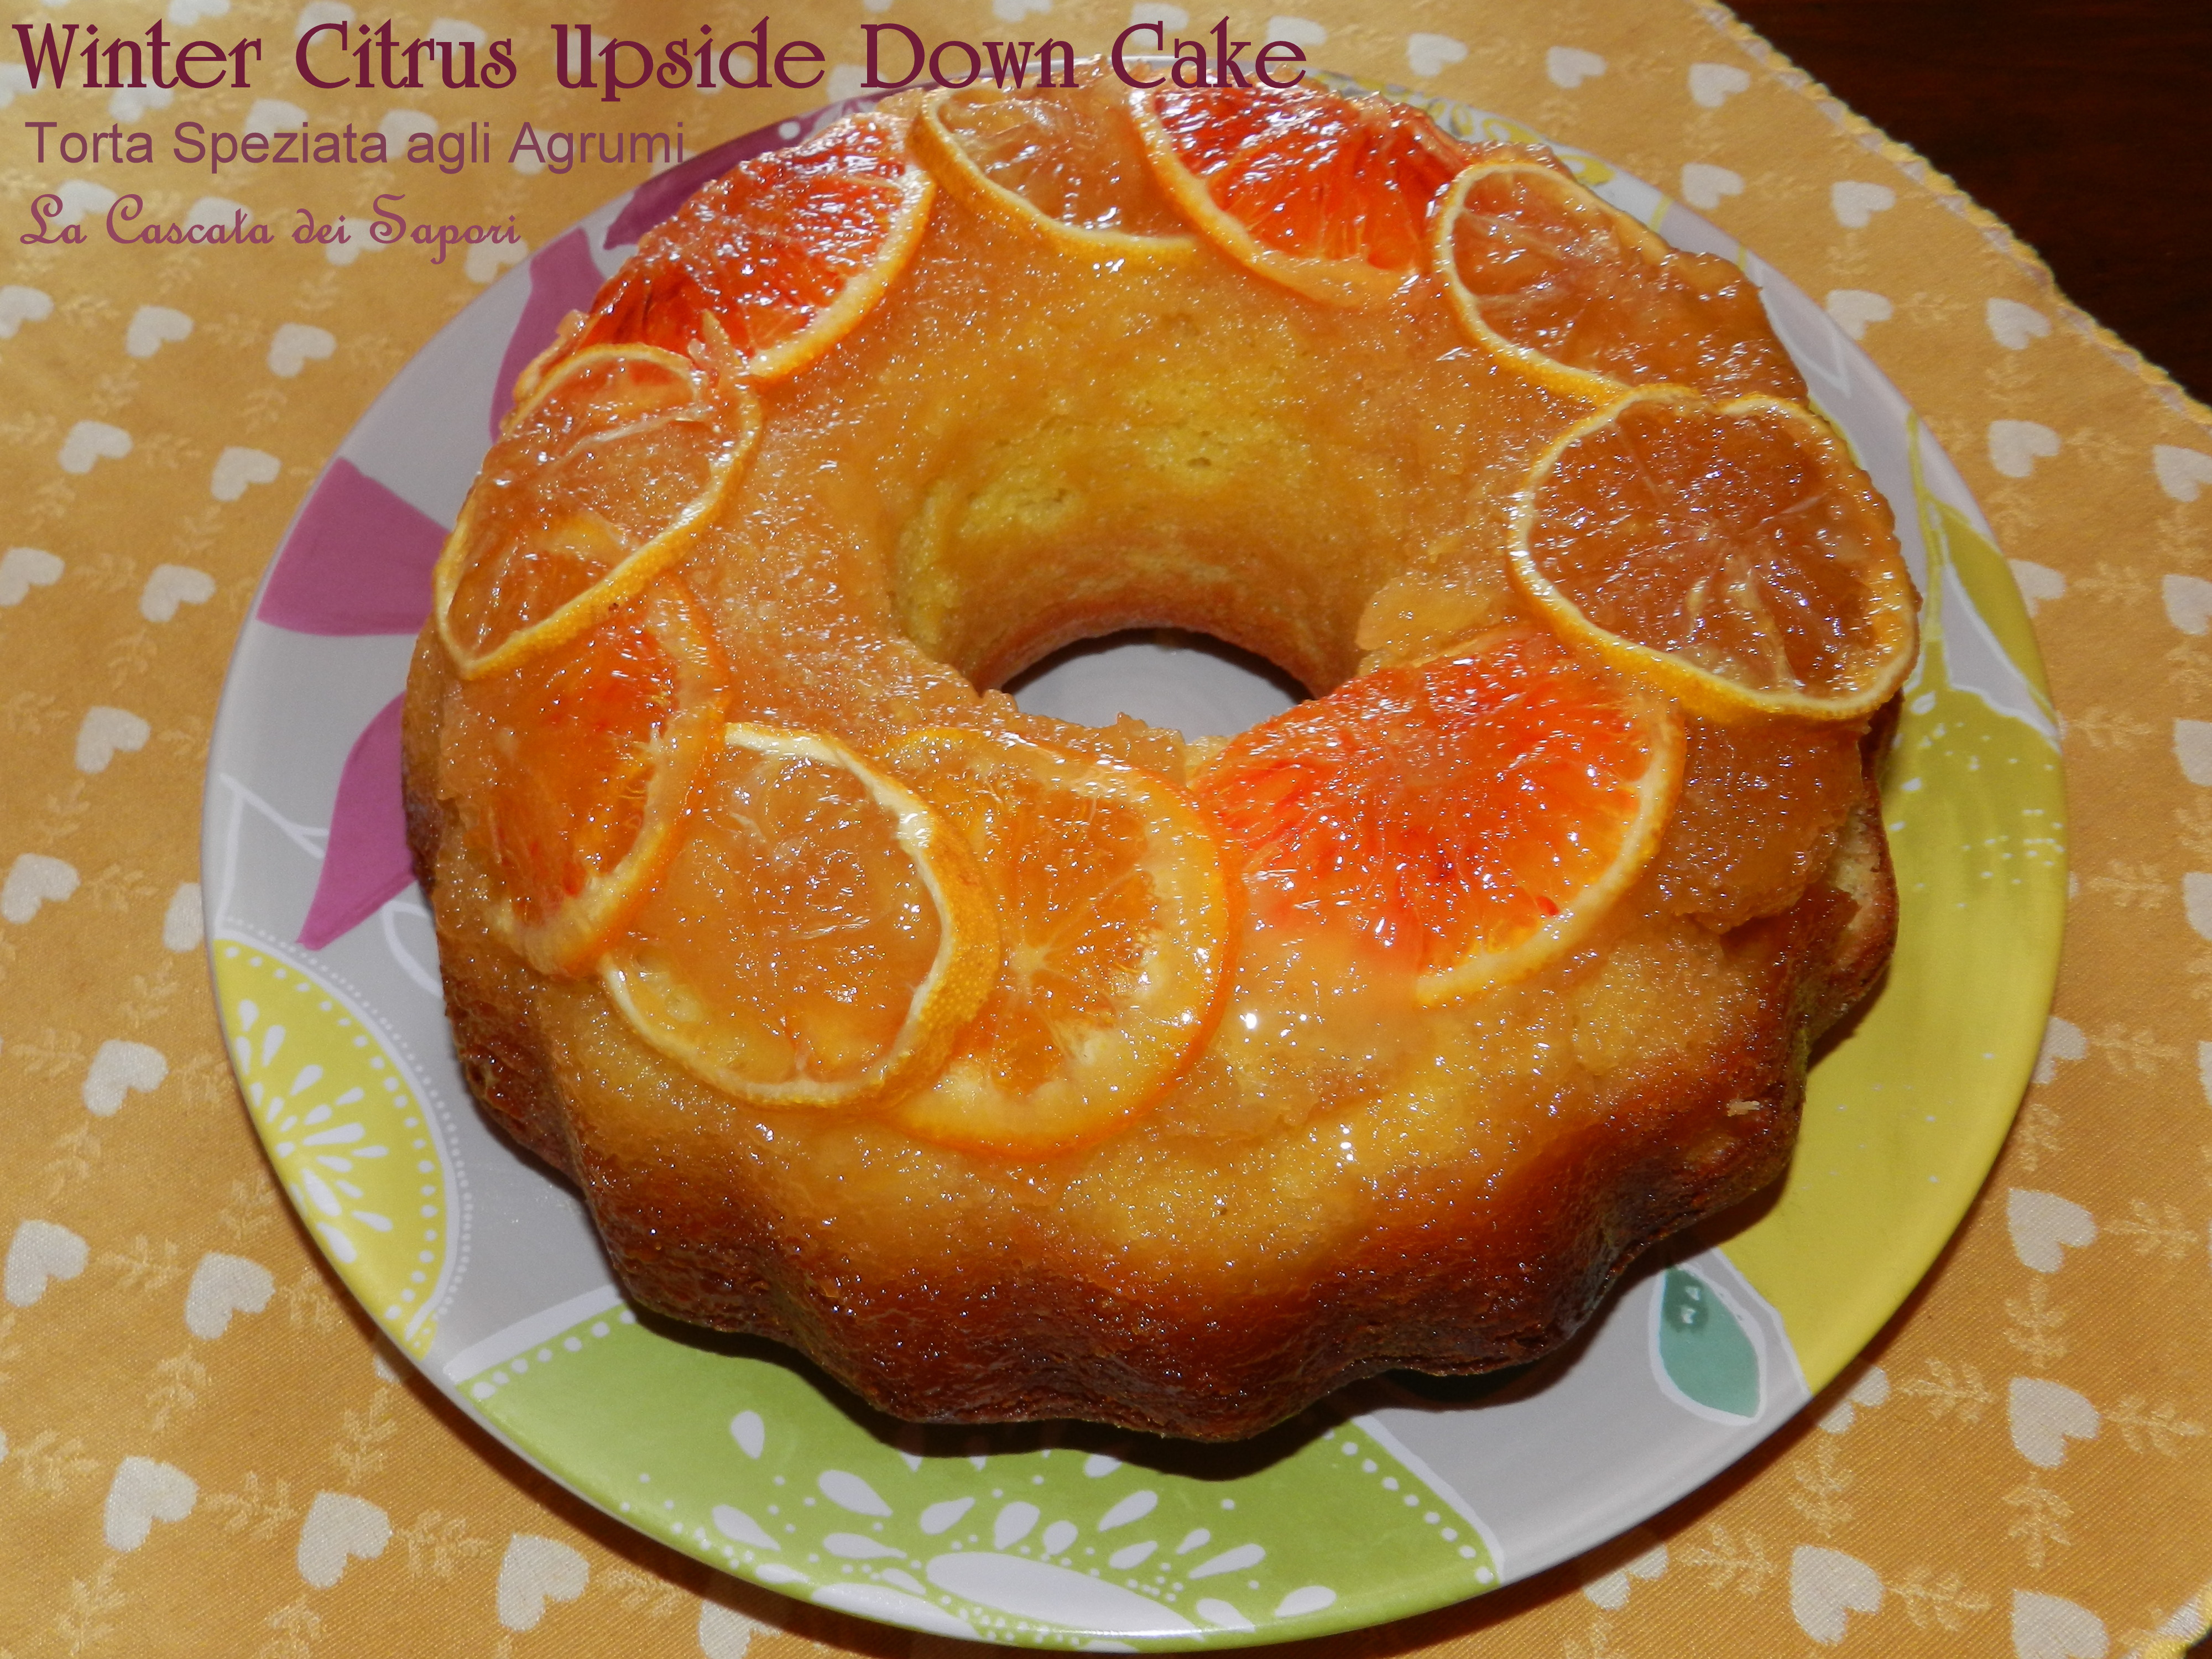 Winter Citrus Upside Down Cake (torta speziata agli agrumi)